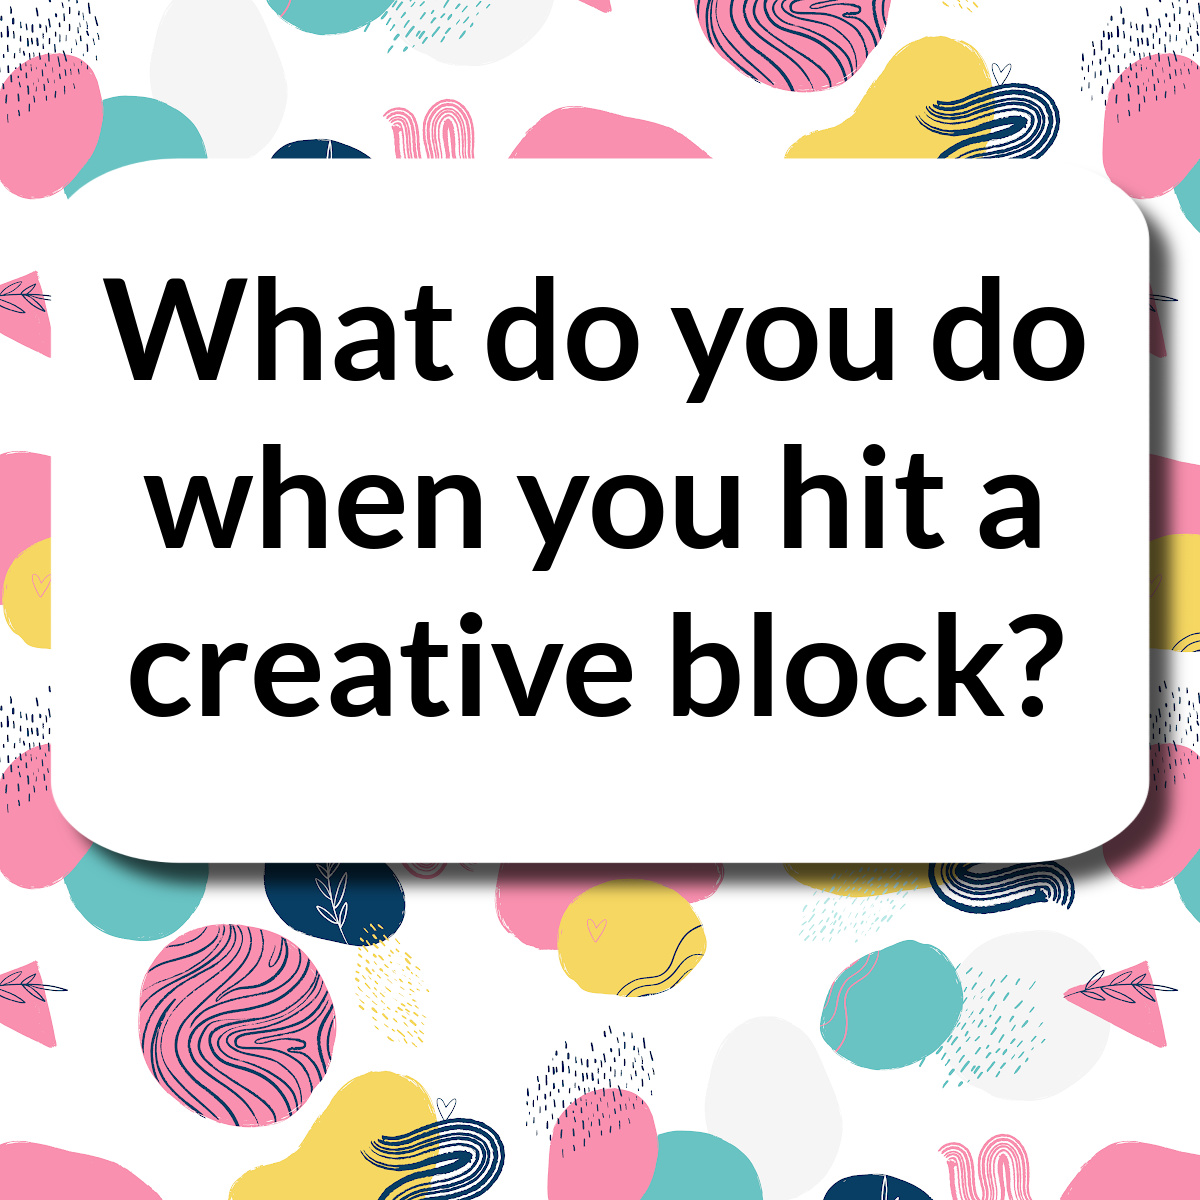 What do you do when you hit a creative block?